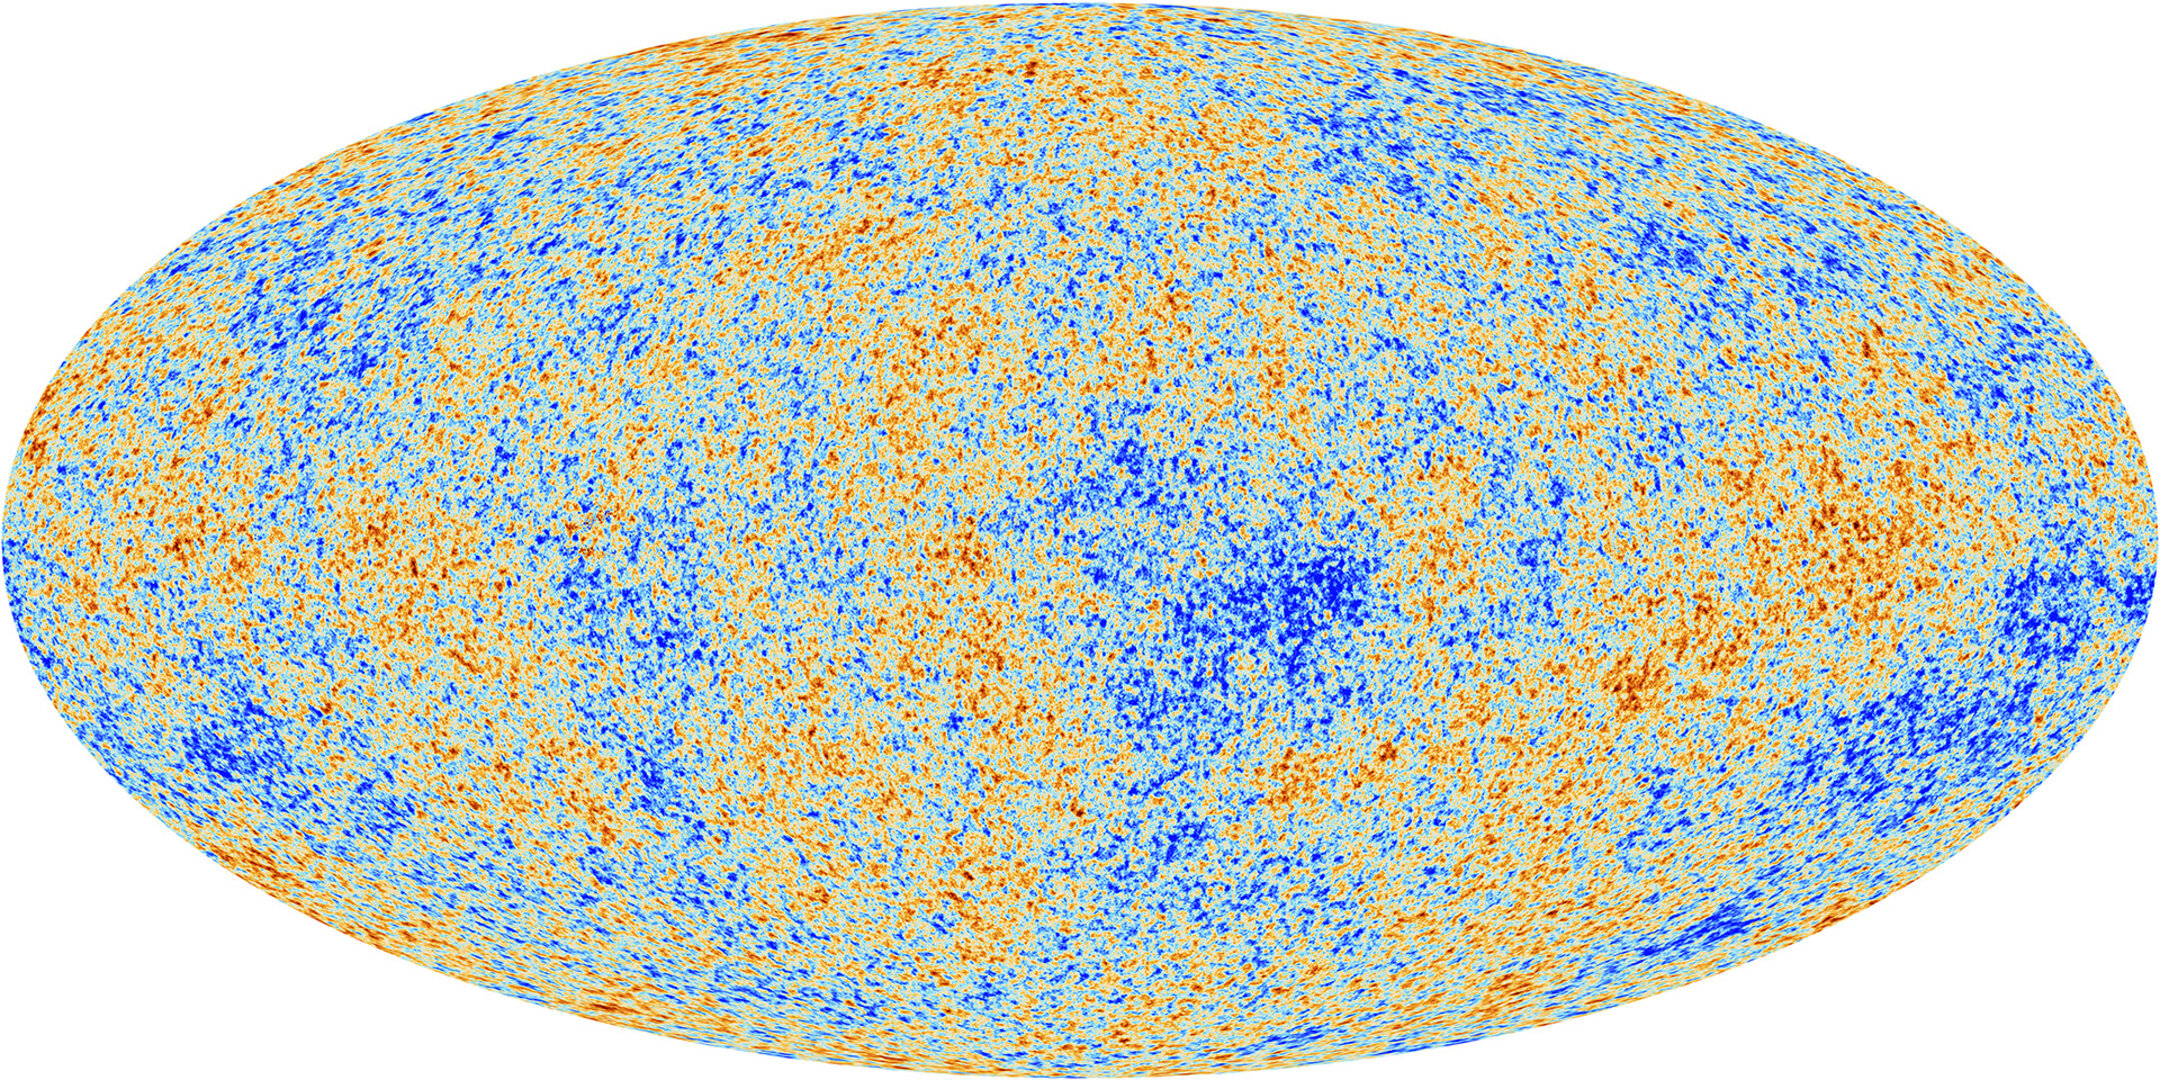 Kosmické mikrovlnné pozadí zmapované observatoří Planck